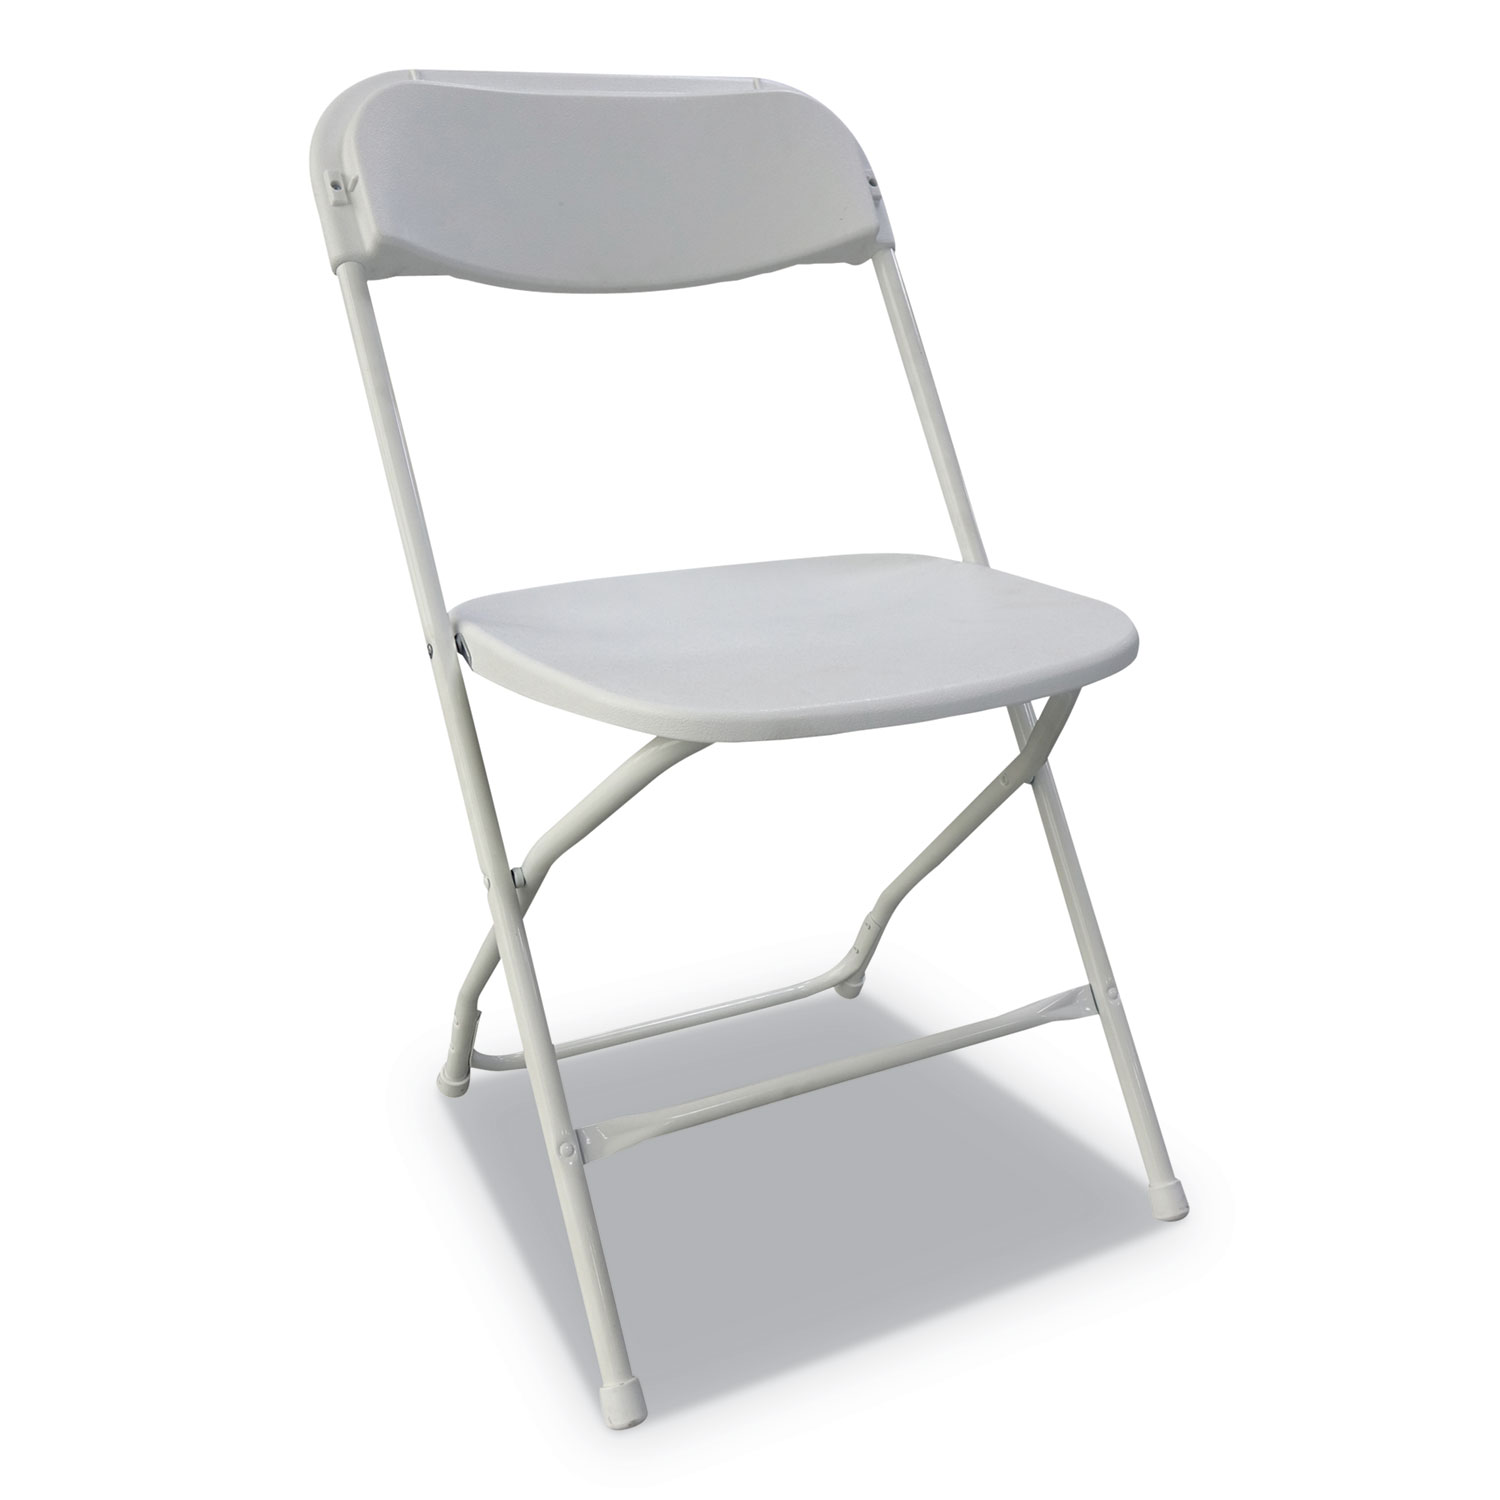  Alera ALEFR9502 Economy Resin Folding Chair, White Seat/White Back, White Base, 4/Carton (ALEFR9502) 